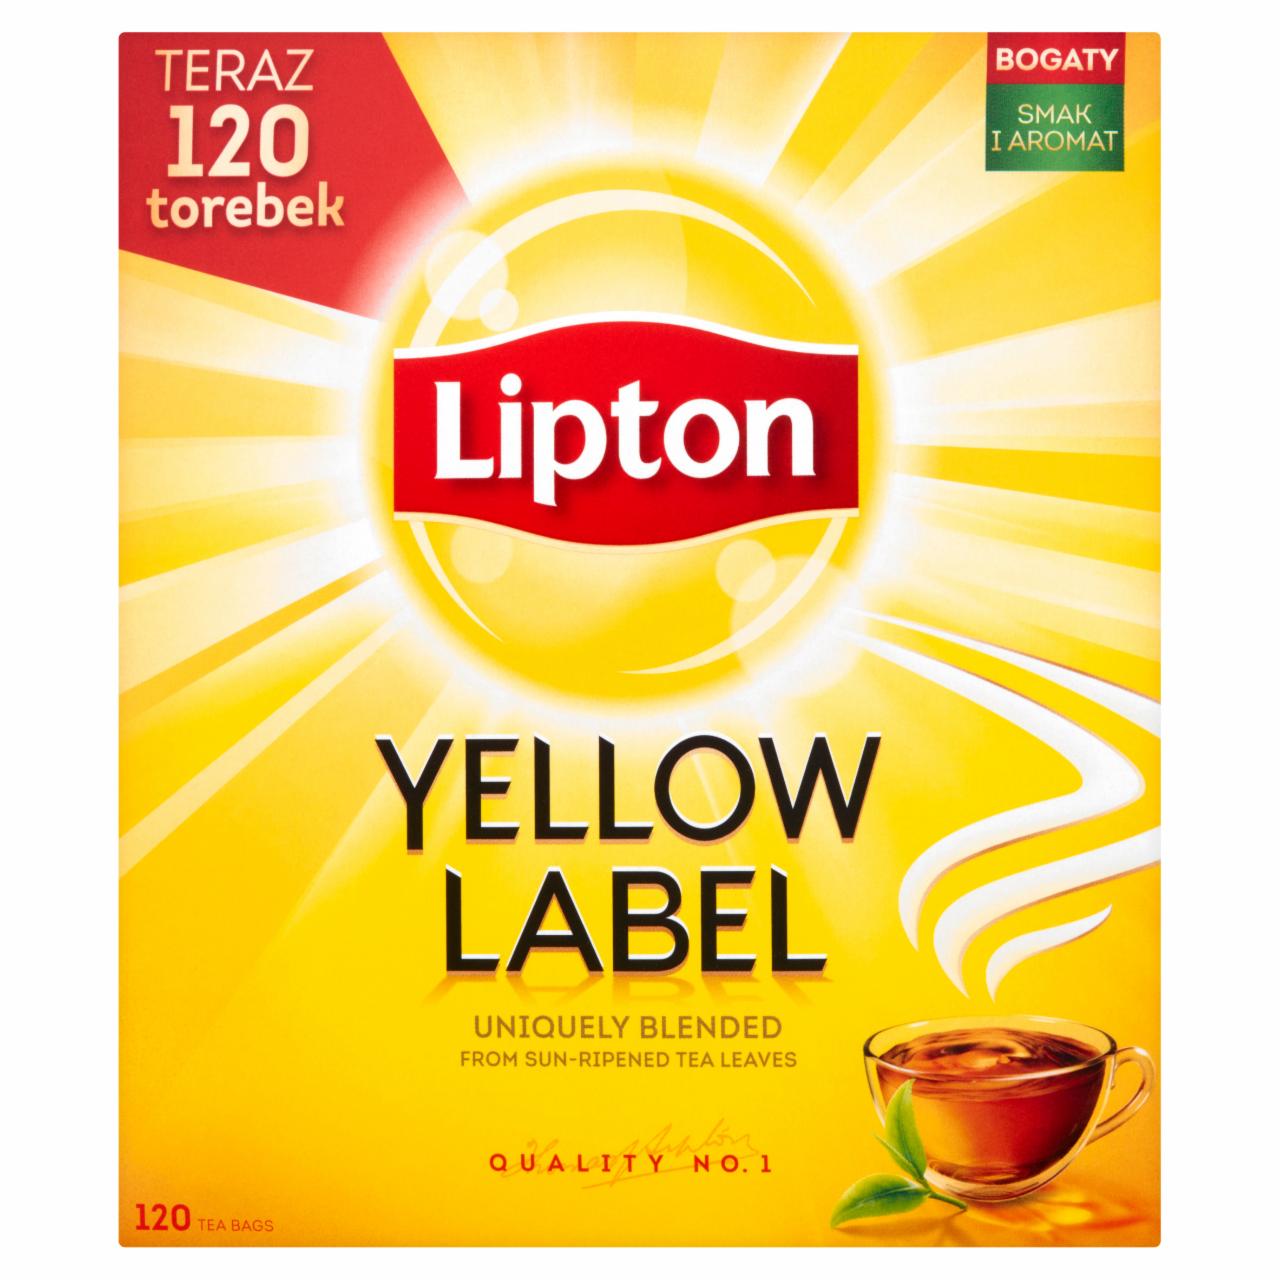 Zdjęcia - Lipton Yellow Label Herbata czarna 240 g (120 torebek)